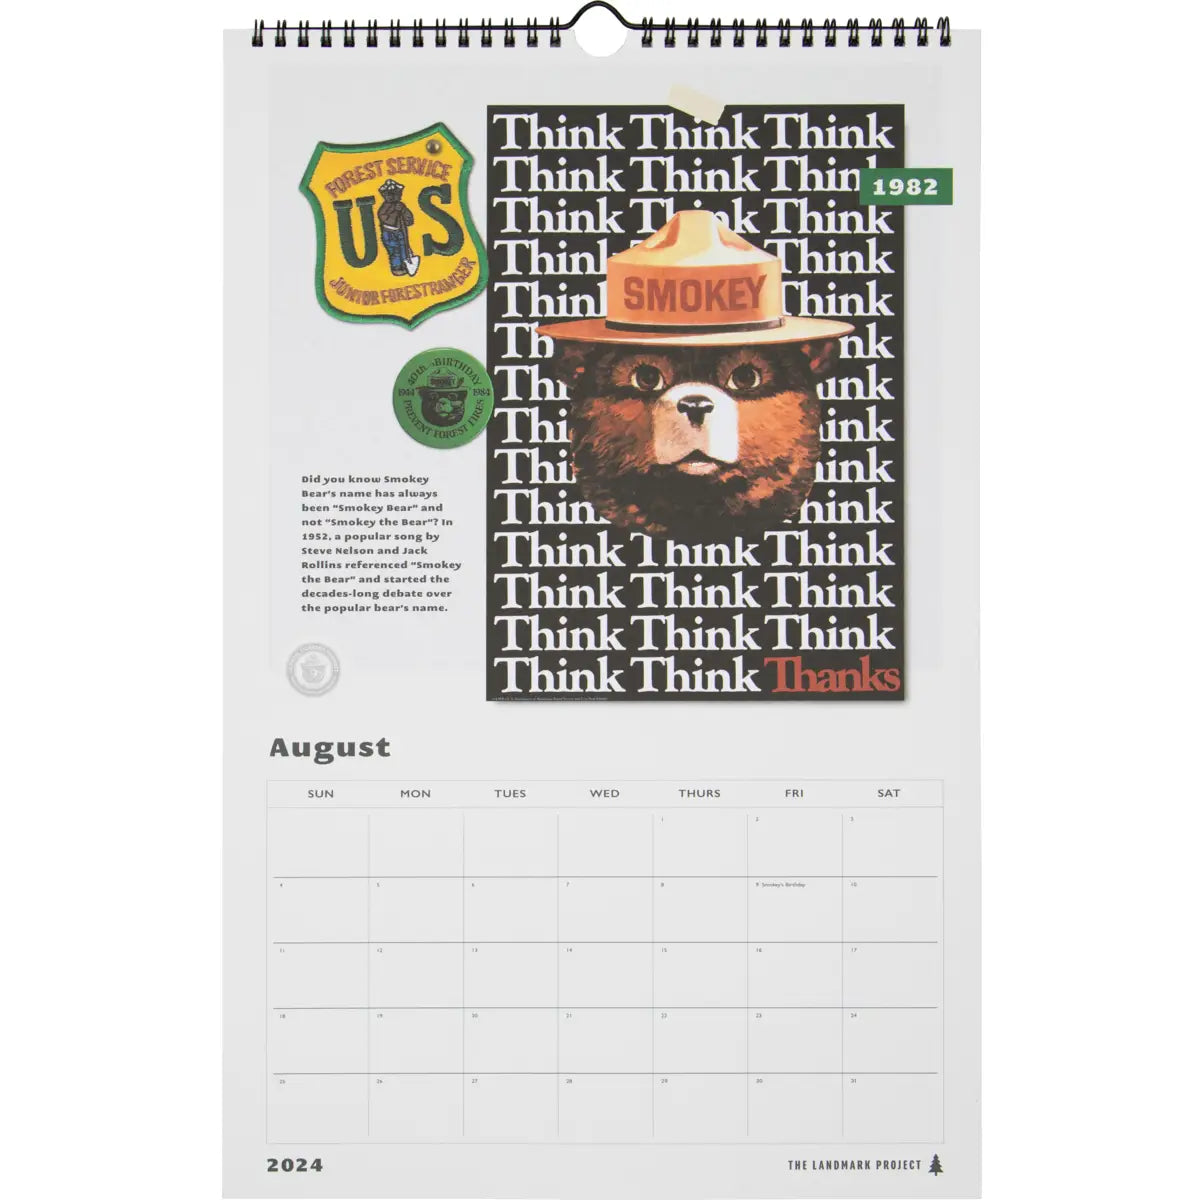 Smokey the Bear Calendar 2024